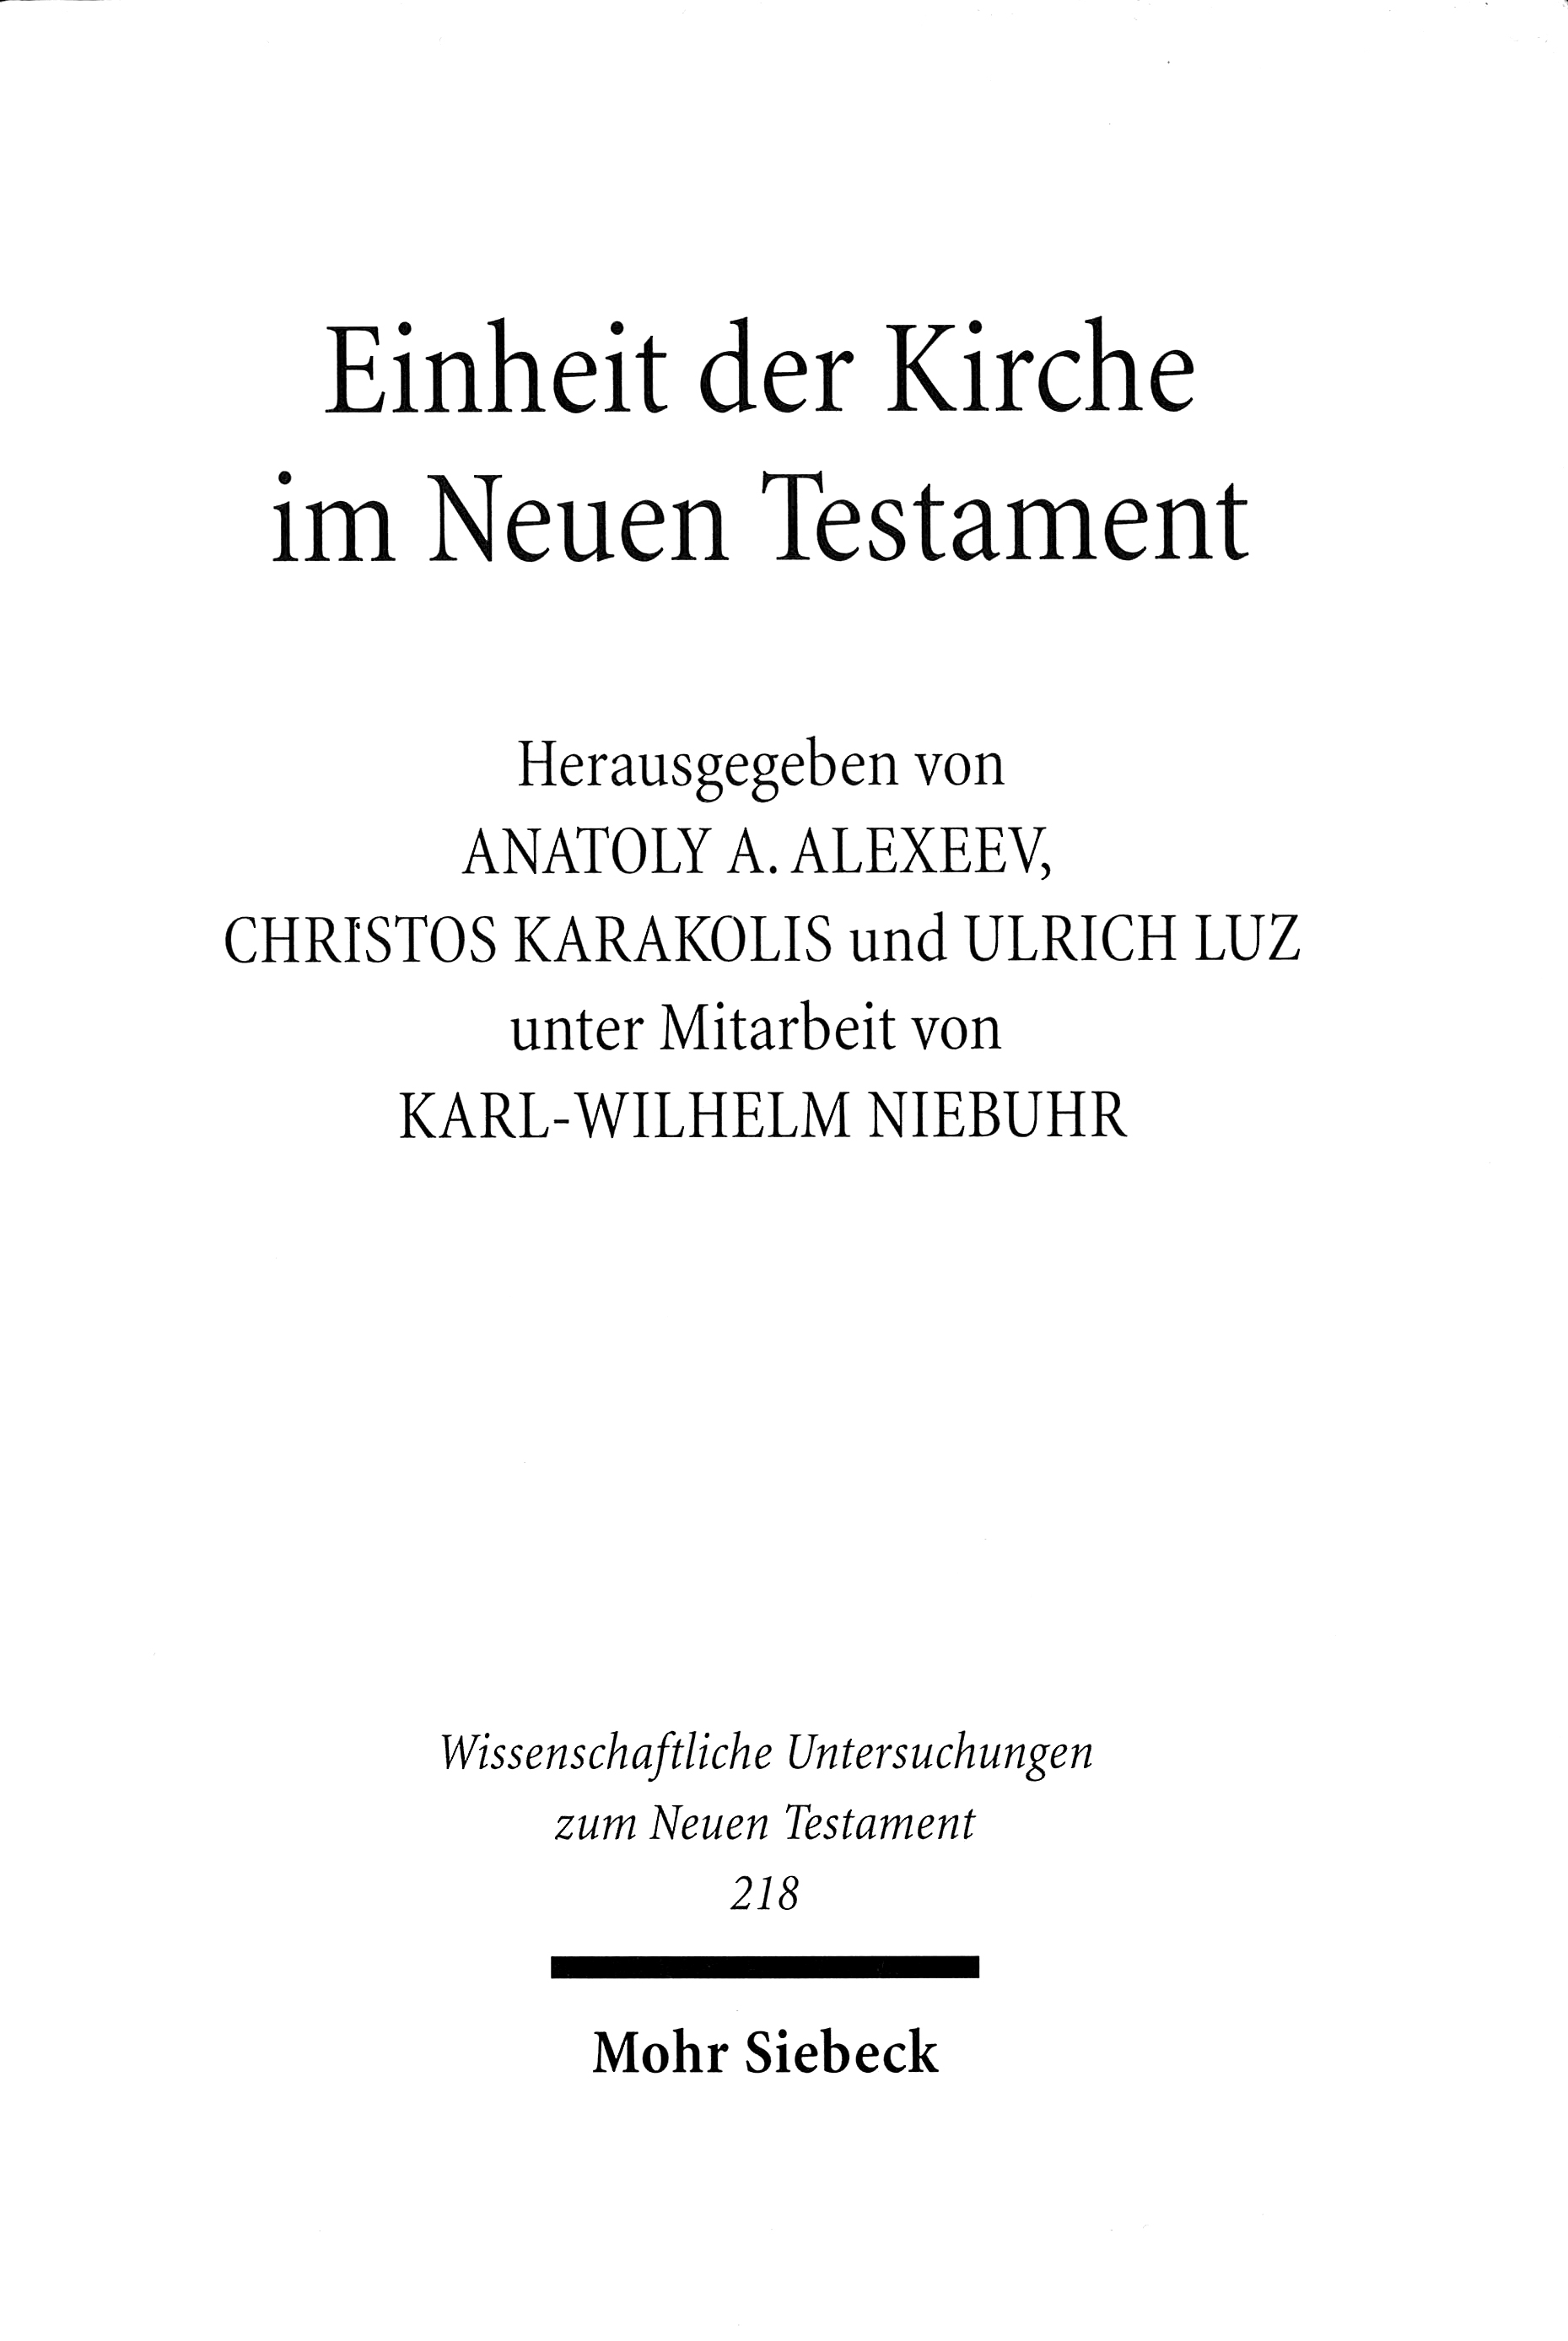 2005_Einheit_der_Kirche_im_Neuen_Testament_blanc.jpg